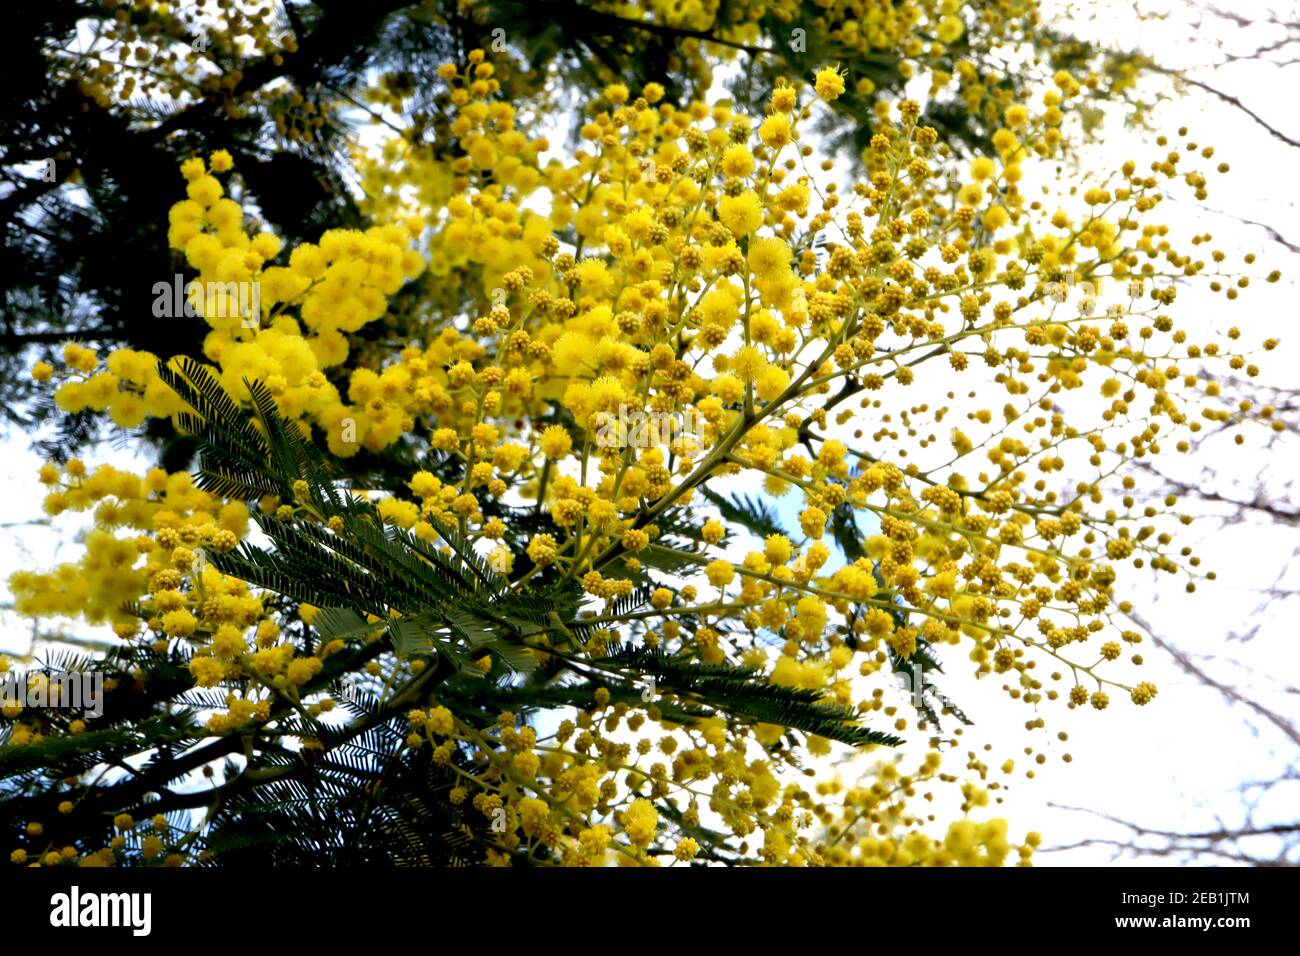 Acacia dealbata Mimosa – grappes de fleurs rondes et moelleuses à tiges vertes et feuilles de plumes, février, Angleterre, Royaume-Uni Banque D'Images